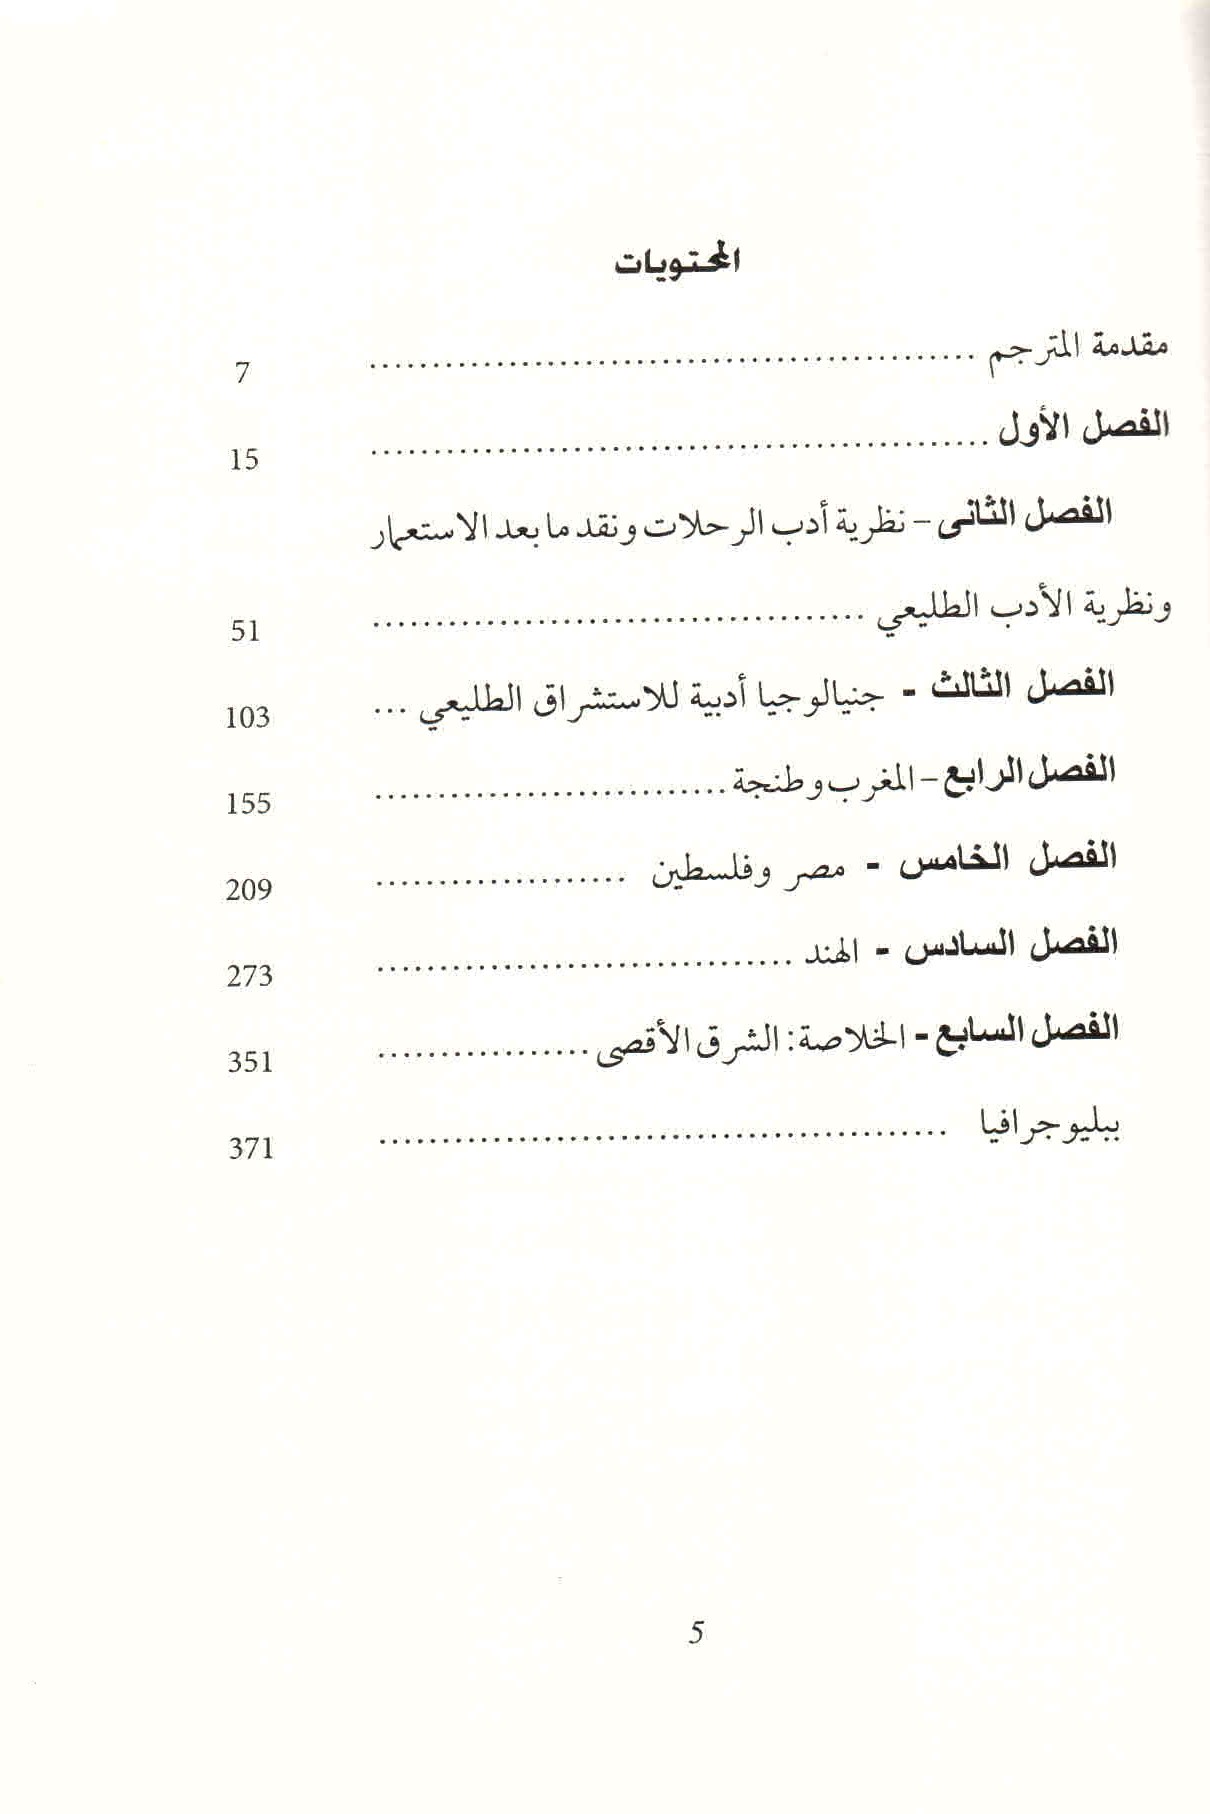 ص. 5 قائمة محتويات كتاب الاستشراق الطليعي.